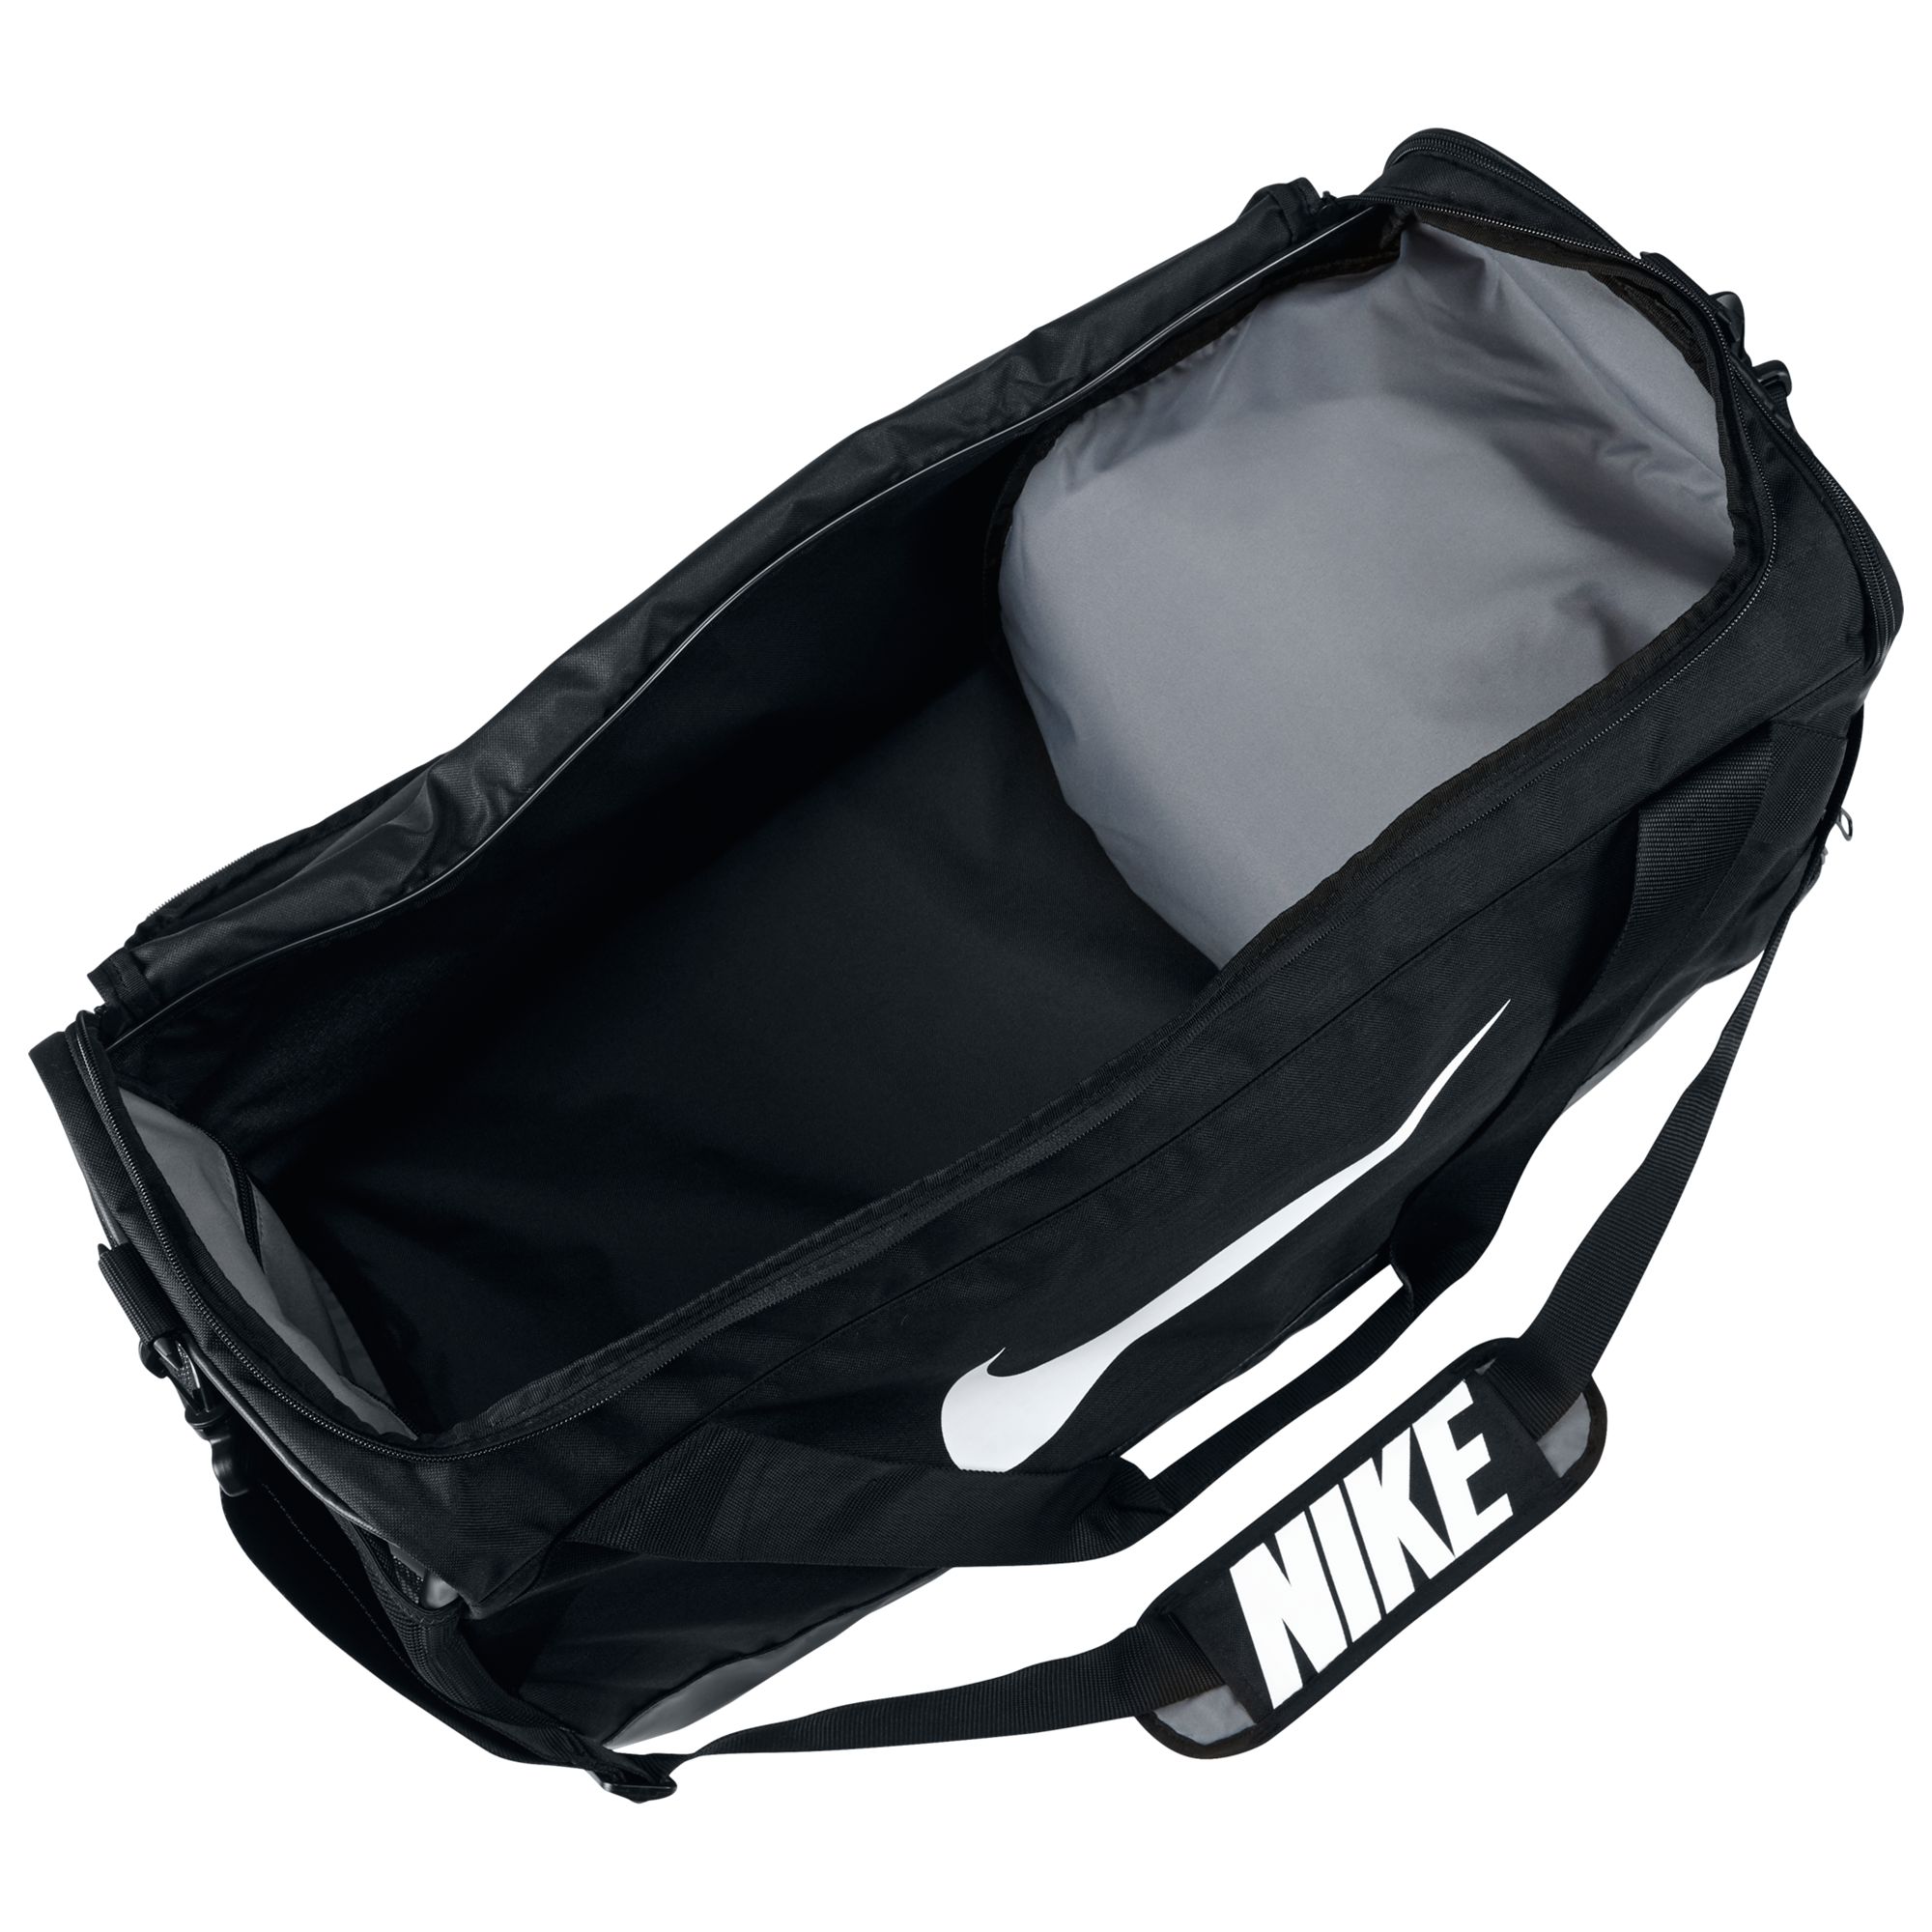 black nike duffel bag large